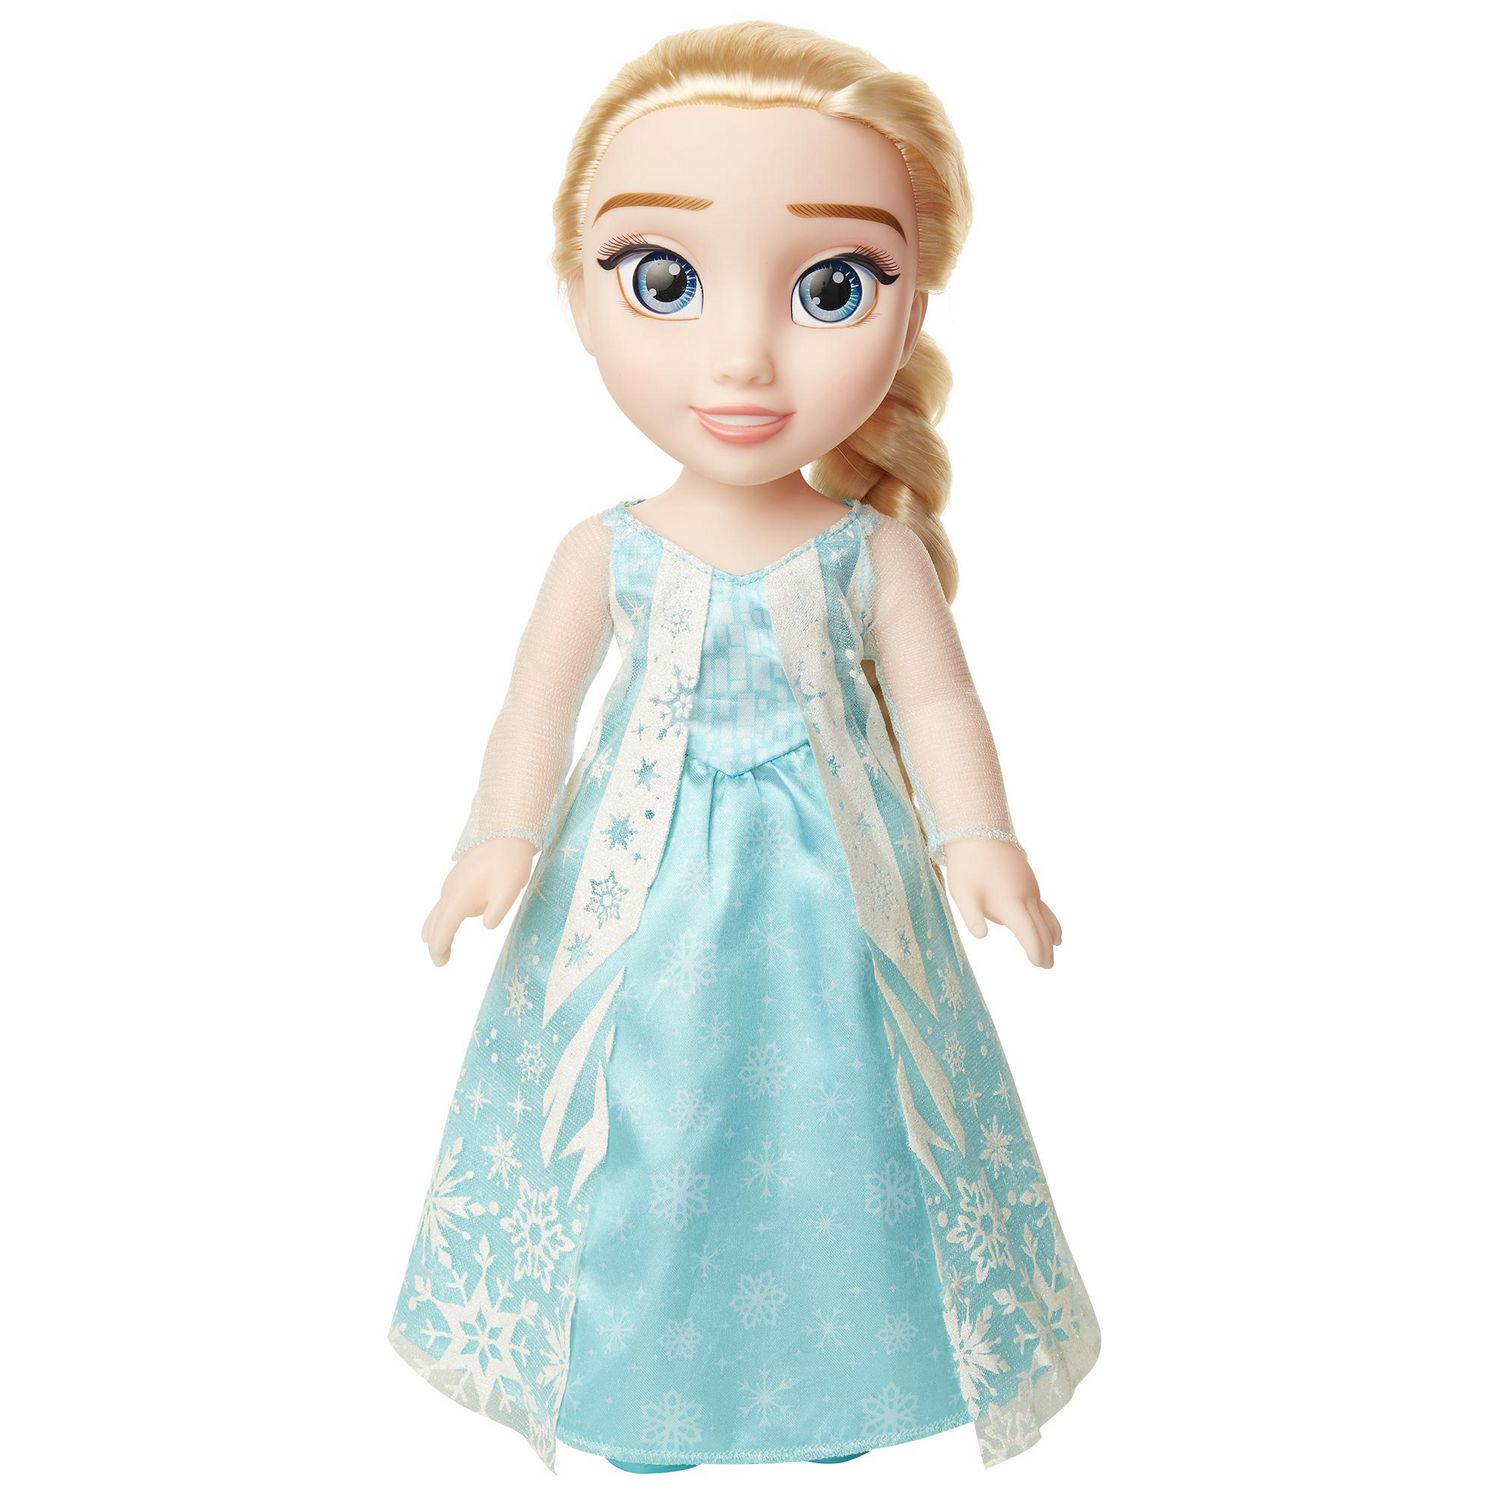 Details about   2013 Disney Frozen 14” Plush Cloth Doll ~ ELSA 